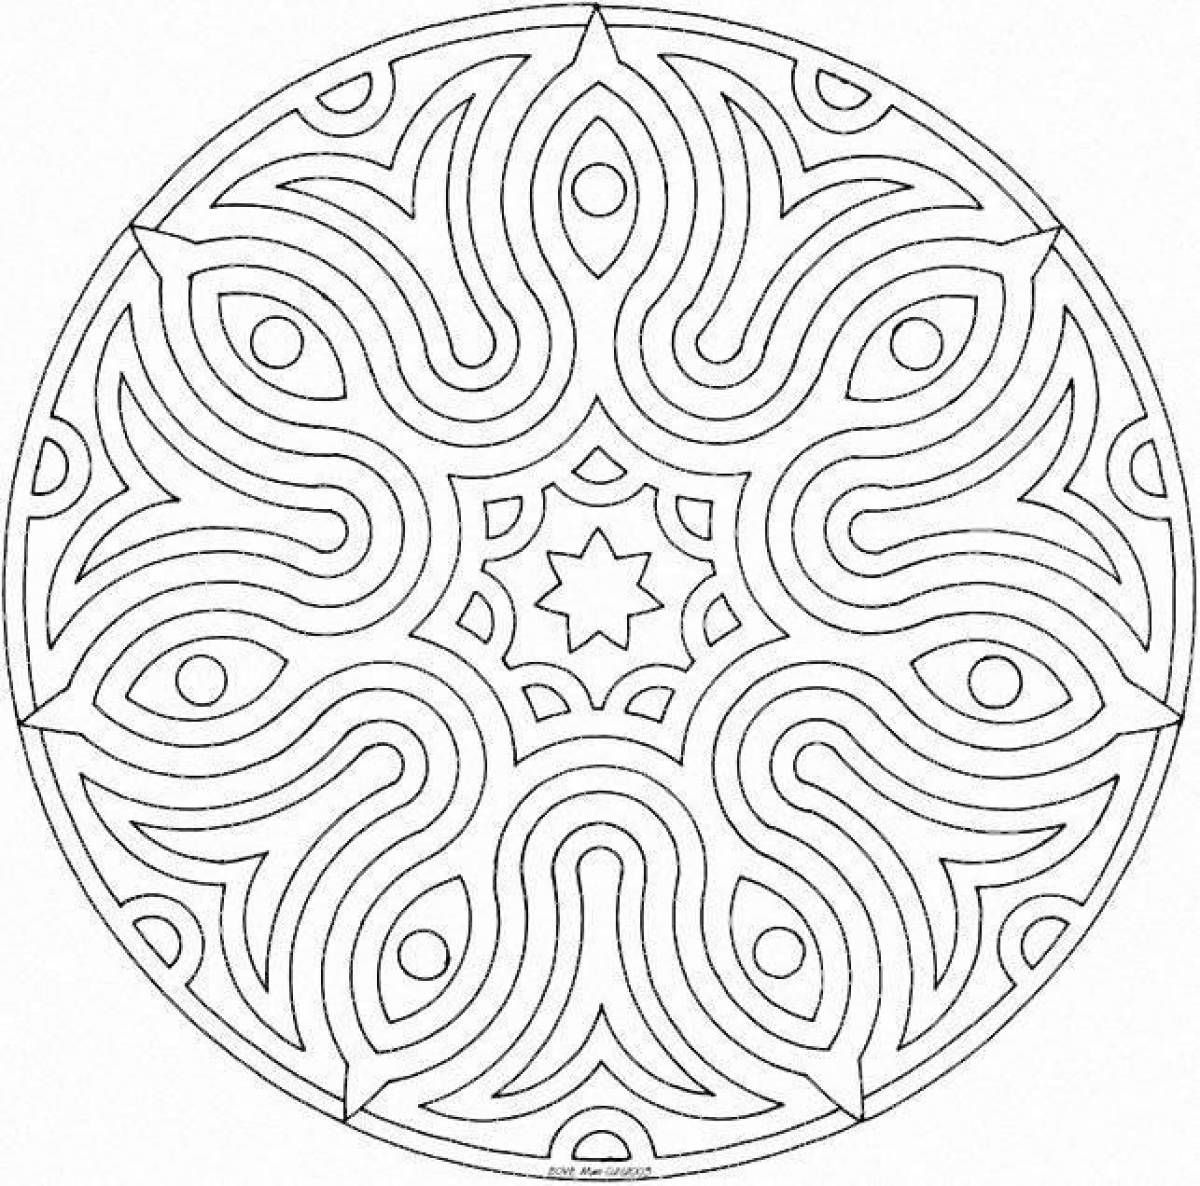 Mandala patterns